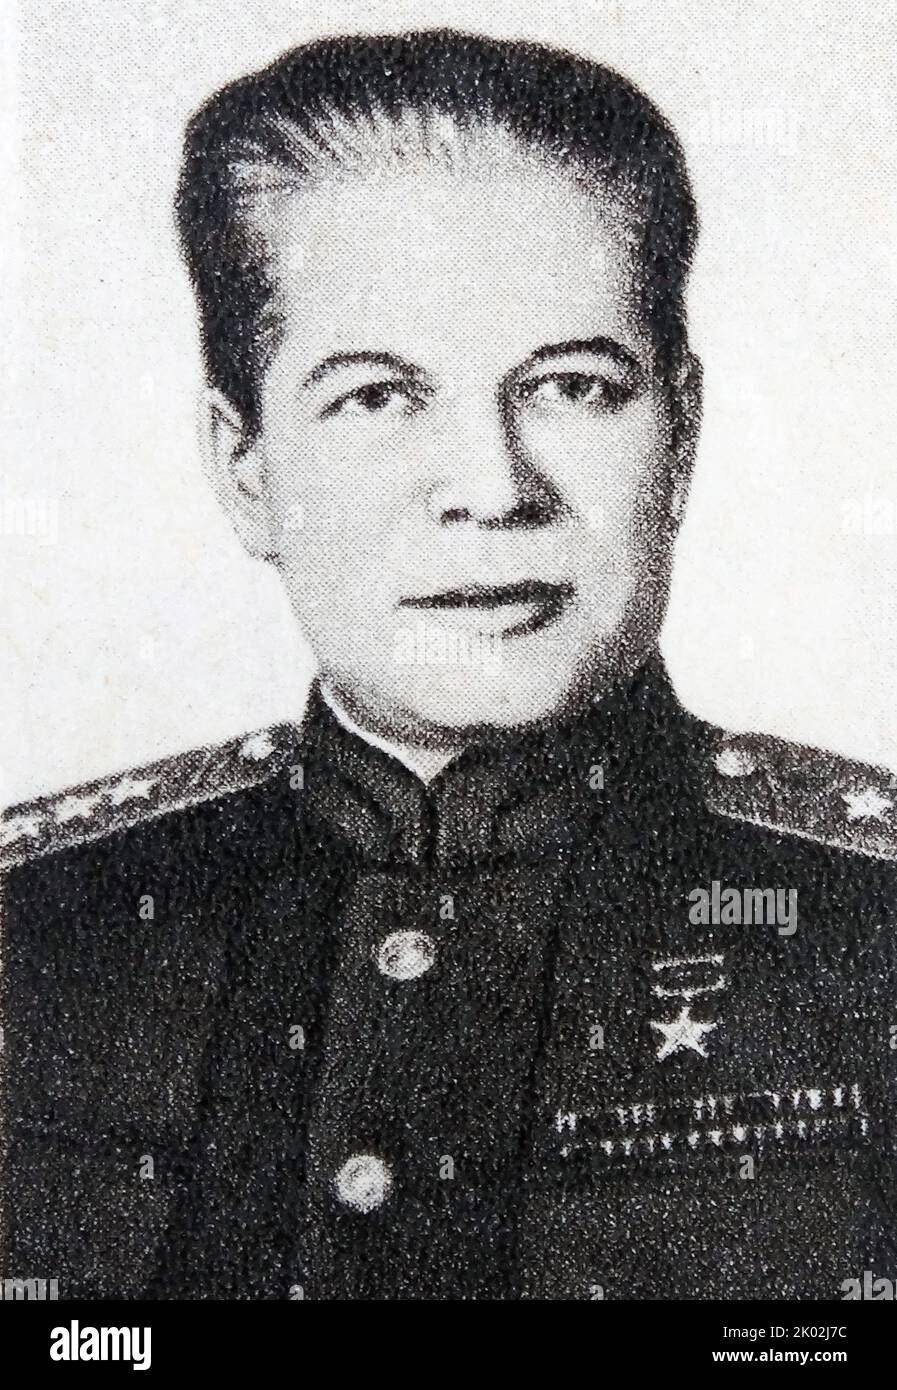 Dmitriy Fyodorovich Ustinov (1908 - 1984) maréchal de l'Union soviétique et politicien soviétique pendant la Guerre froide. Ministre de la défense de l'Union soviétique de 1976 à sa mort en 1984. Alors qu'il était membre du Comité populaire des armements pendant la Seconde Guerre mondiale, il a réussi à établir une distinction au sein des rangs du parti en supervisant avec succès l'évacuation des industries de Leningrad vers les montagnes de l'Oural. À la fin de la guerre, il a été chargé de saisir les matières premières, les scientifiques et les recherches laissés par le programme de missiles de l'Allemagne. Banque D'Images